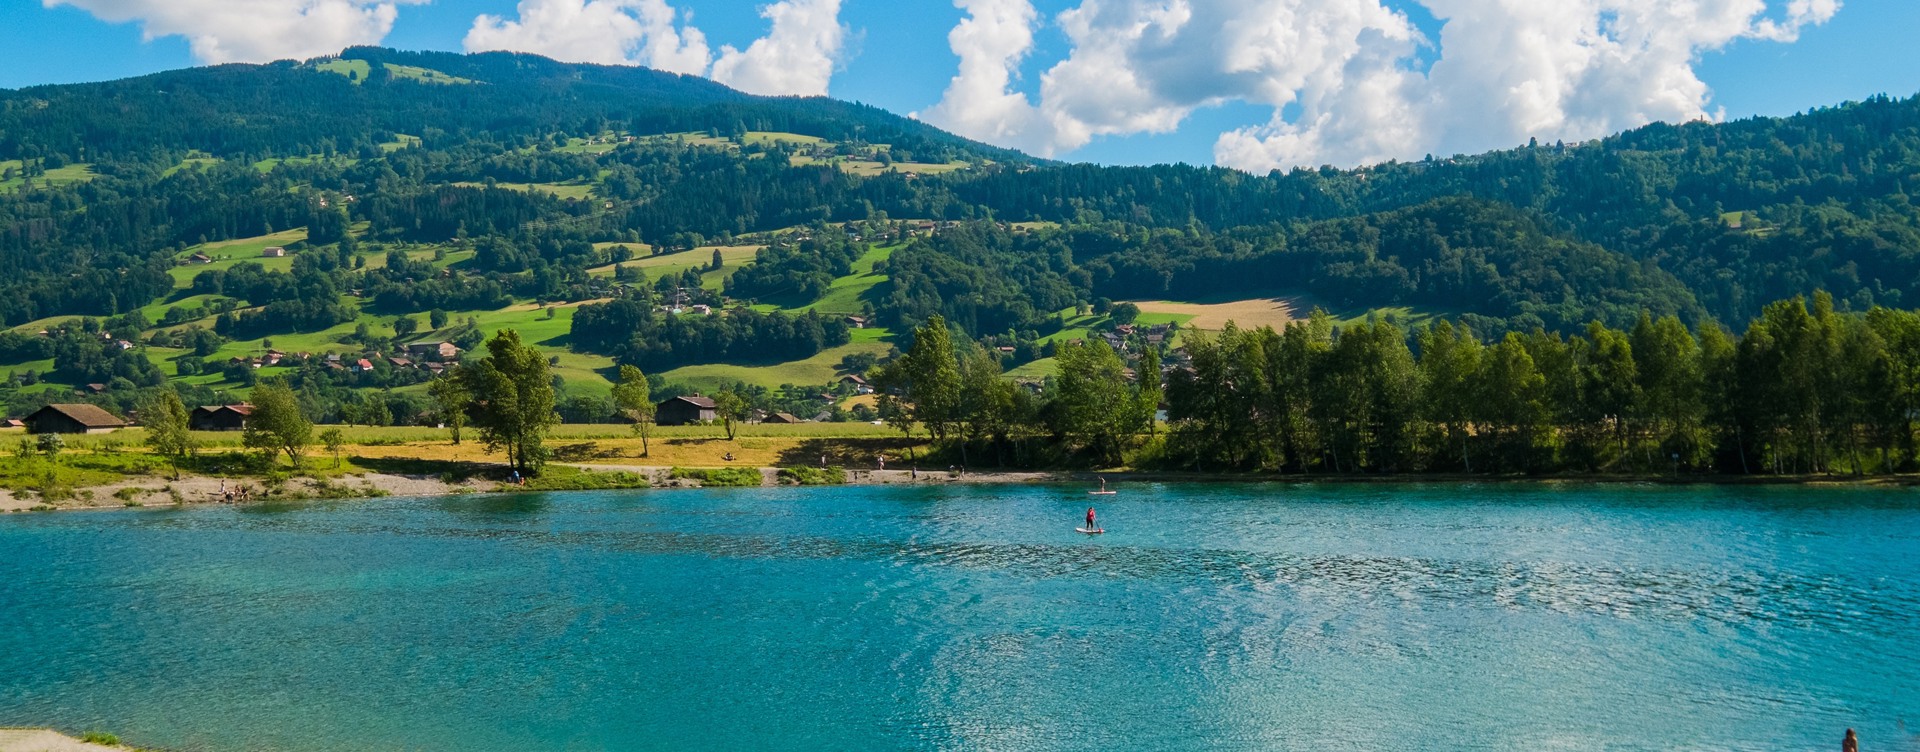 Entdecken Sie bei Ihrem Aufenthalt in Flaine 
die wunderschöne Umgebung der französischen Alpen